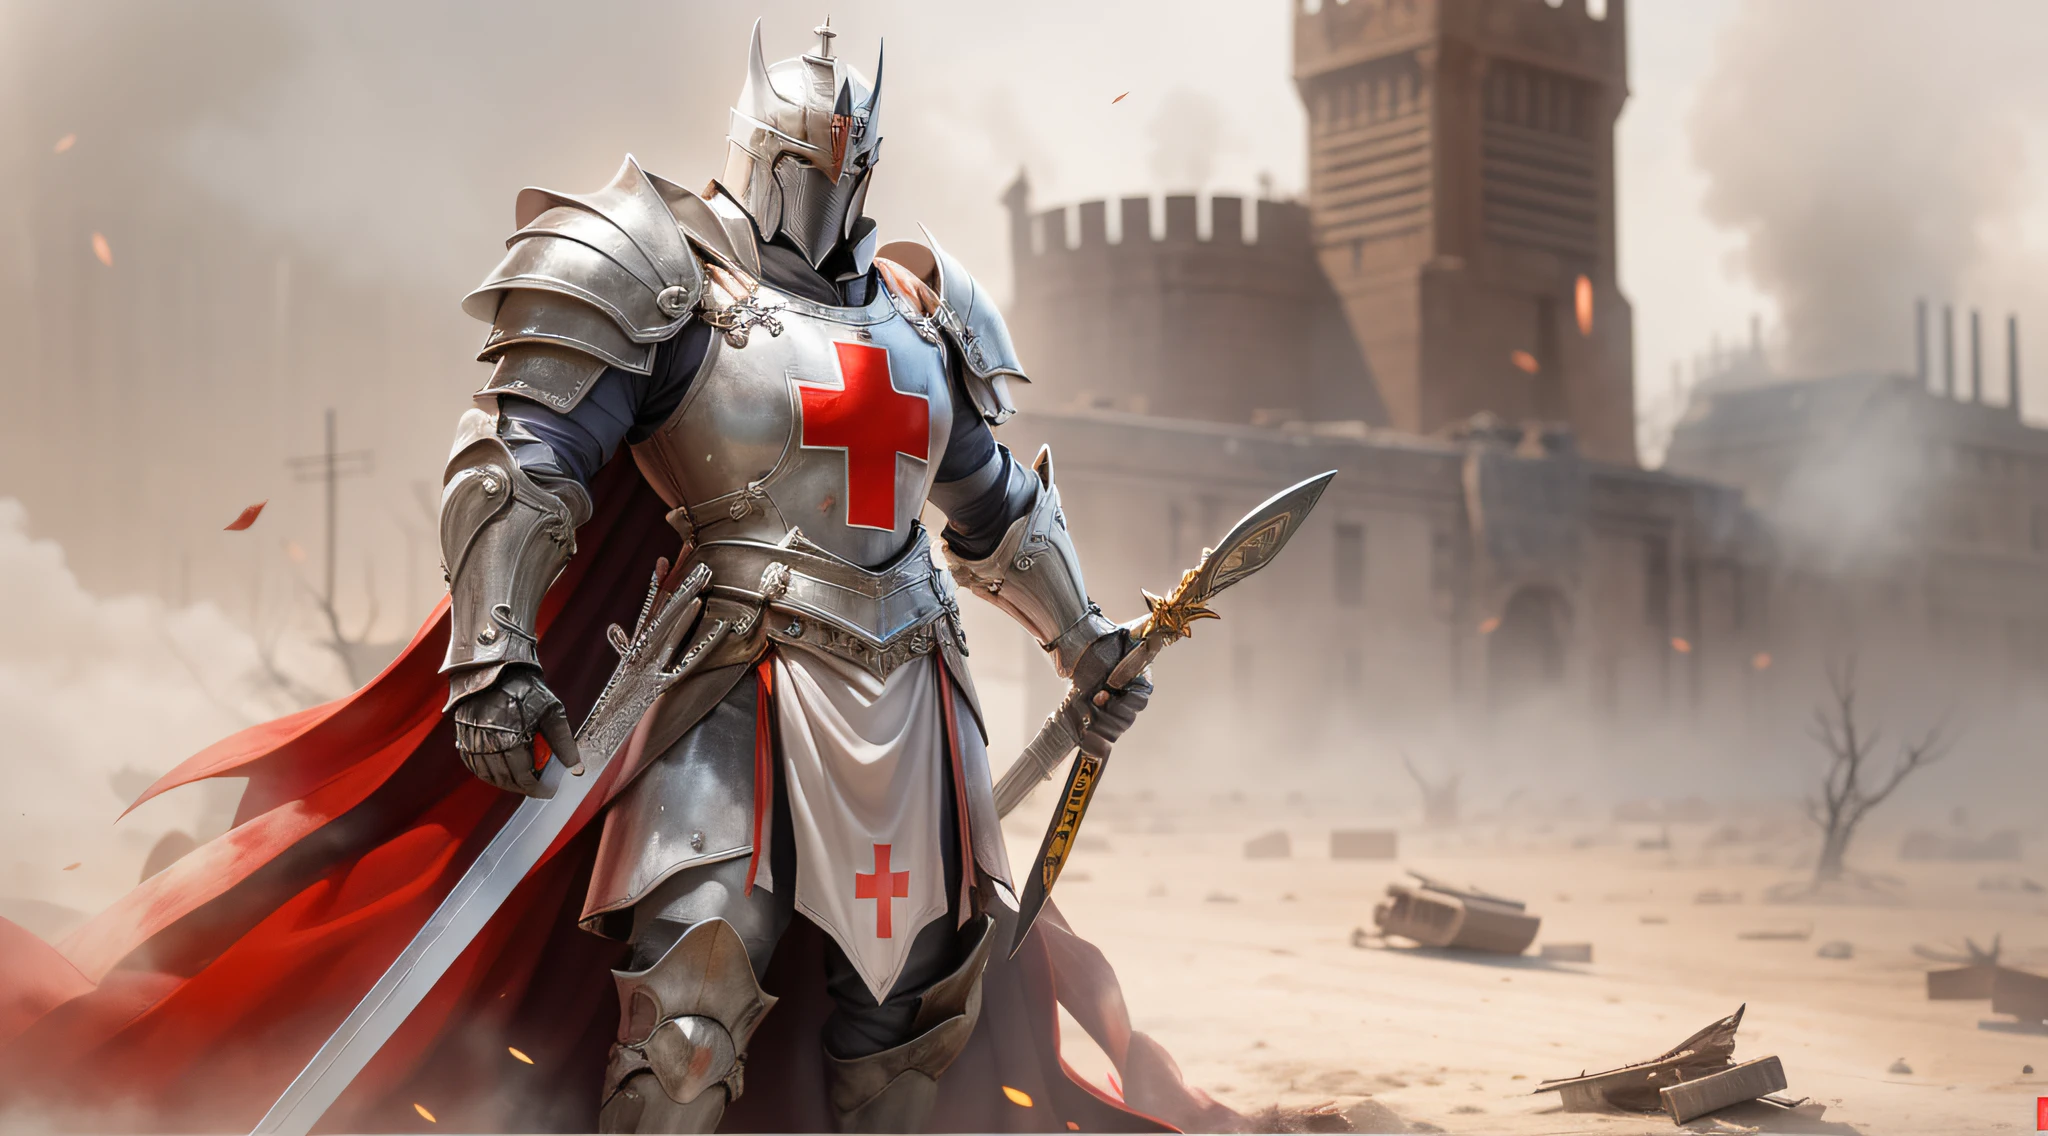 อัศวินเทมพลาร์ผู้สง่างามยืนอยู่ในภูมิประเทศที่รกร้าง, สวมชุดเกราะแวววาวมีกากบาทสีแดงบนหน้าอก. He wields a long sword and holds a shield adorned with the symbol oฉ the Templars. ในพื้นหลัง, เศษซากและควันเป็นพยานถึงการต่อสู้ในอดีต. His posture conveys conฉidence and authority, ขณะที่ดวงตาของเขาเผยให้เห็นความมุ่งมั่น., สถิตยศาสตร์, รายละเอียดสูง, แสงภาพยนตร์, โซนี่ FE จีเอ็ม, lens ฉlare, ฉ/1.8, 135มม, 35มม, ฉirst-person view, จุดที่หายไป, ยูเอชดี, ถูกต้องตามหลักกายวิภาค, 8k, ได้รับรางวัล, คุณภาพดีที่สุด, รายละเอียดสูงs